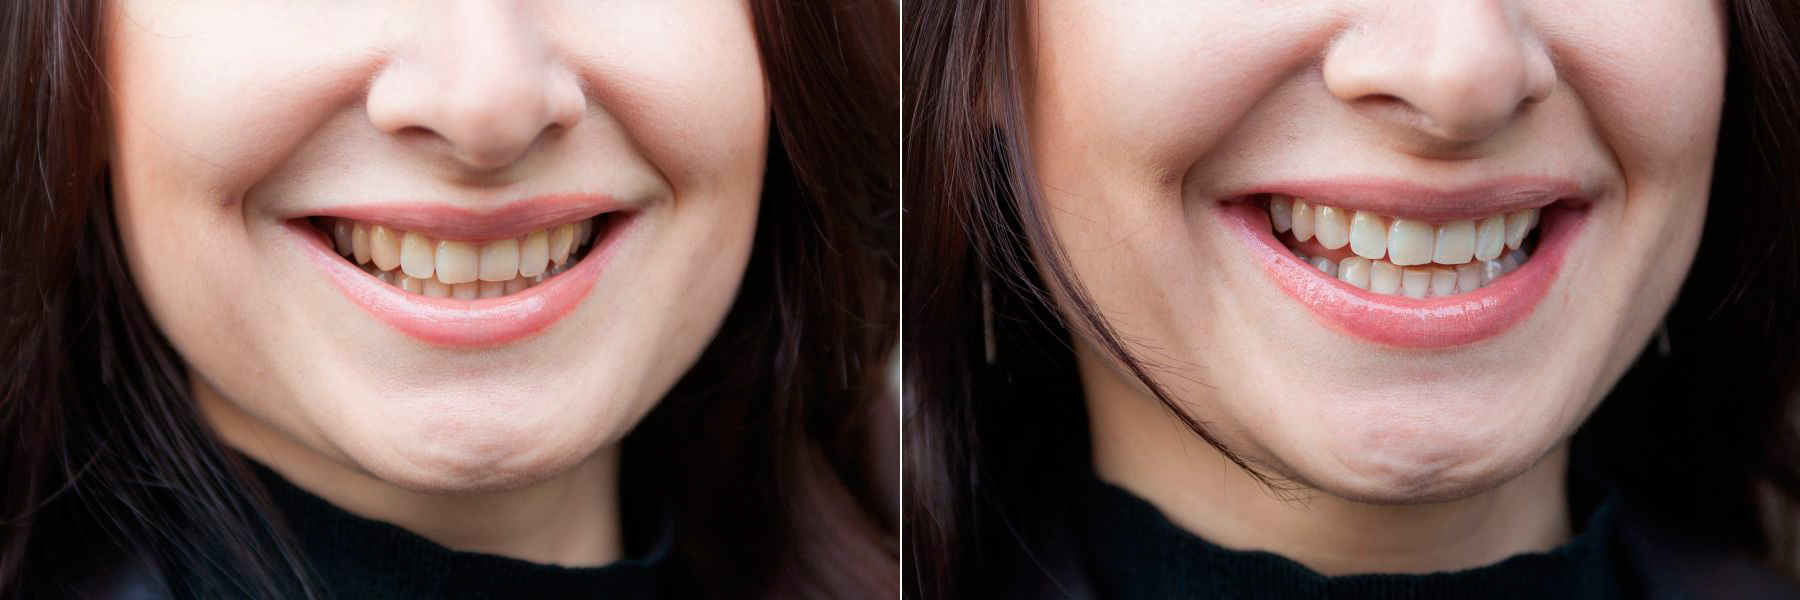 Зубы до и после отбеливания фото девушек ингалятор что заливать при насморке